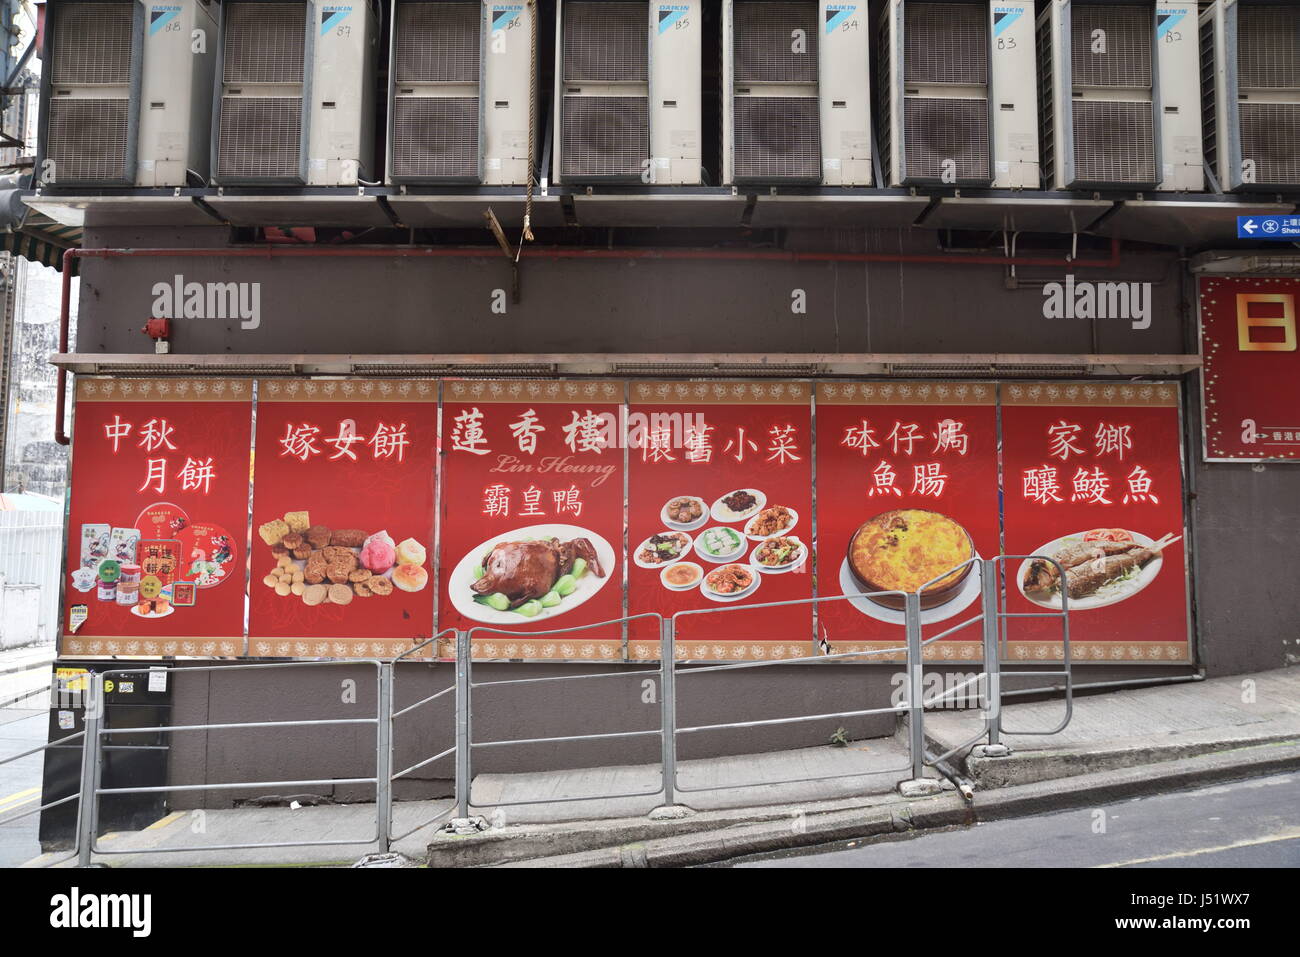 Les aliments traditionnels chinois et de confiseries sur cartes d'affichage Banque D'Images